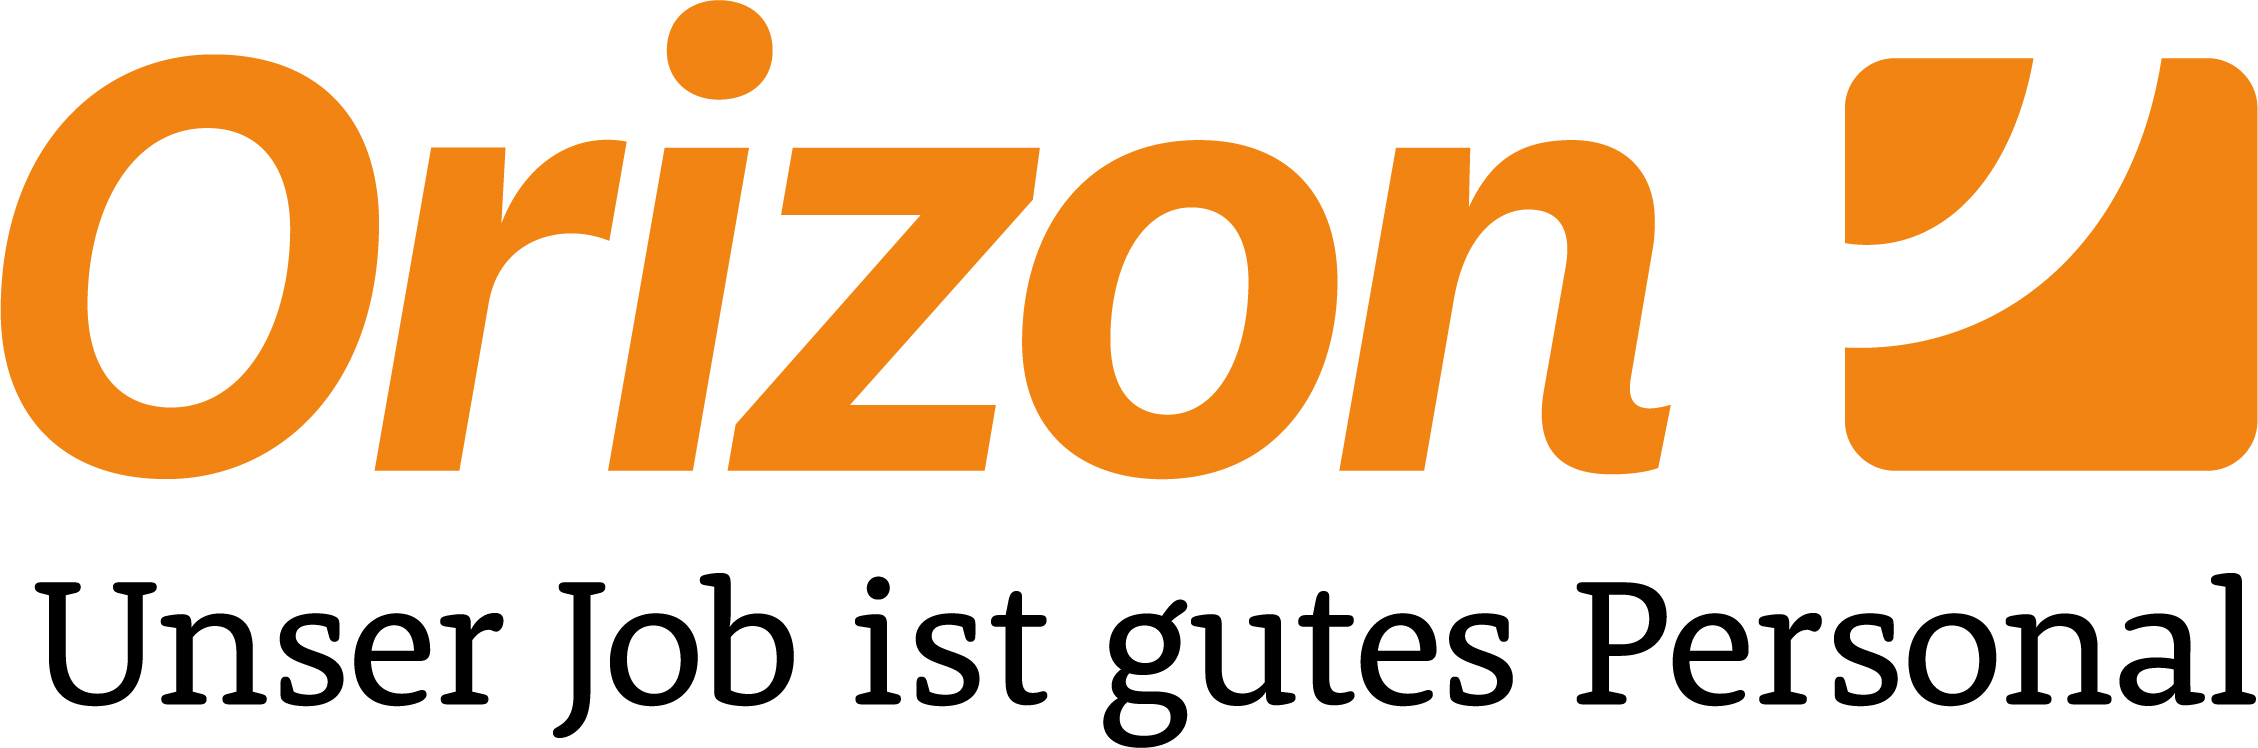 ORIZON GmbH